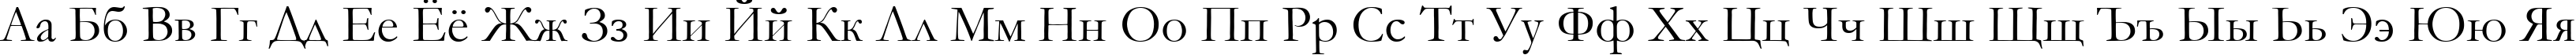 Пример написания русского алфавита шрифтом font252